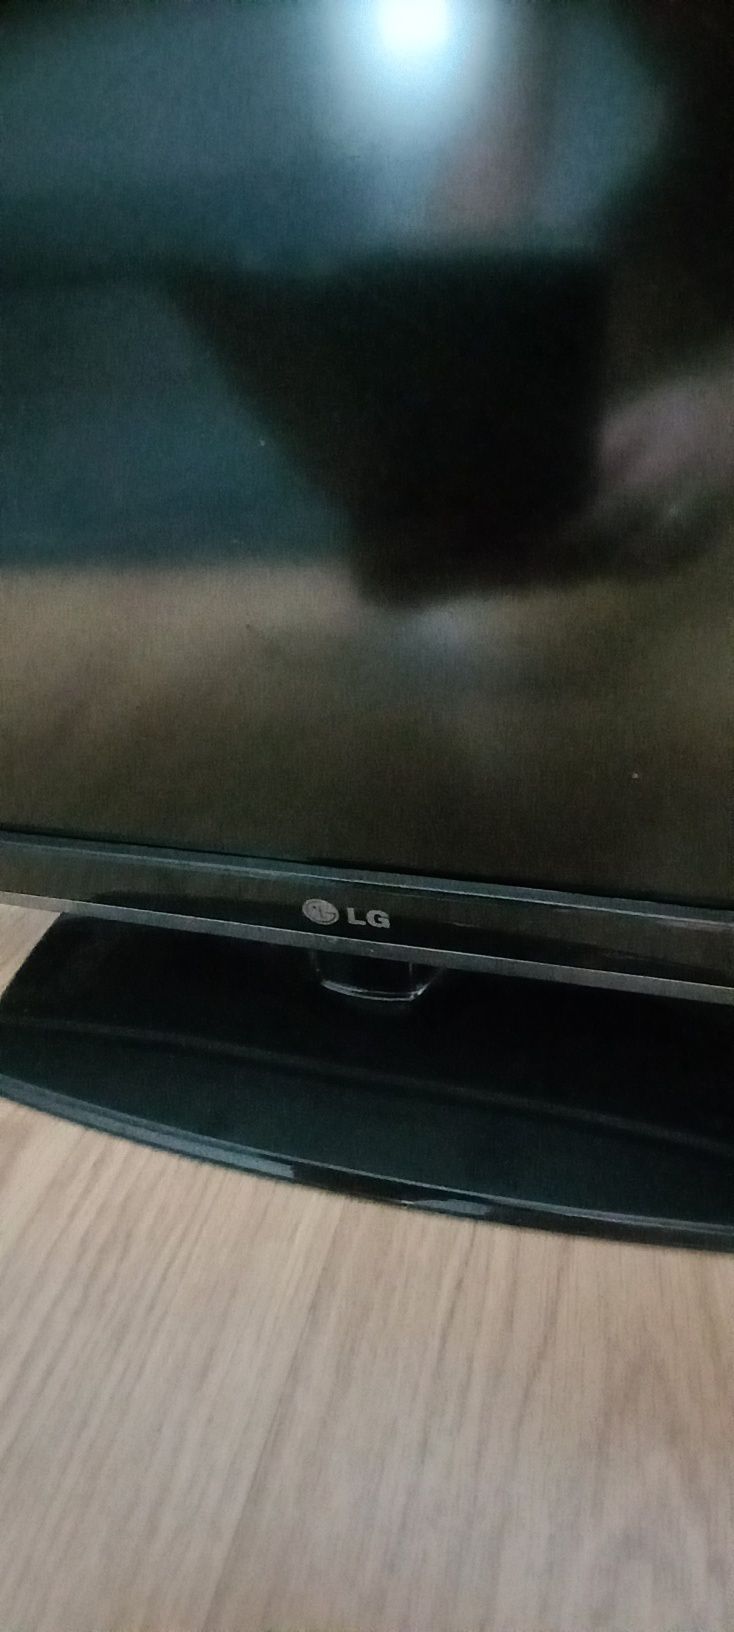 Telewizor LG na stopce; może służyć jako monitor